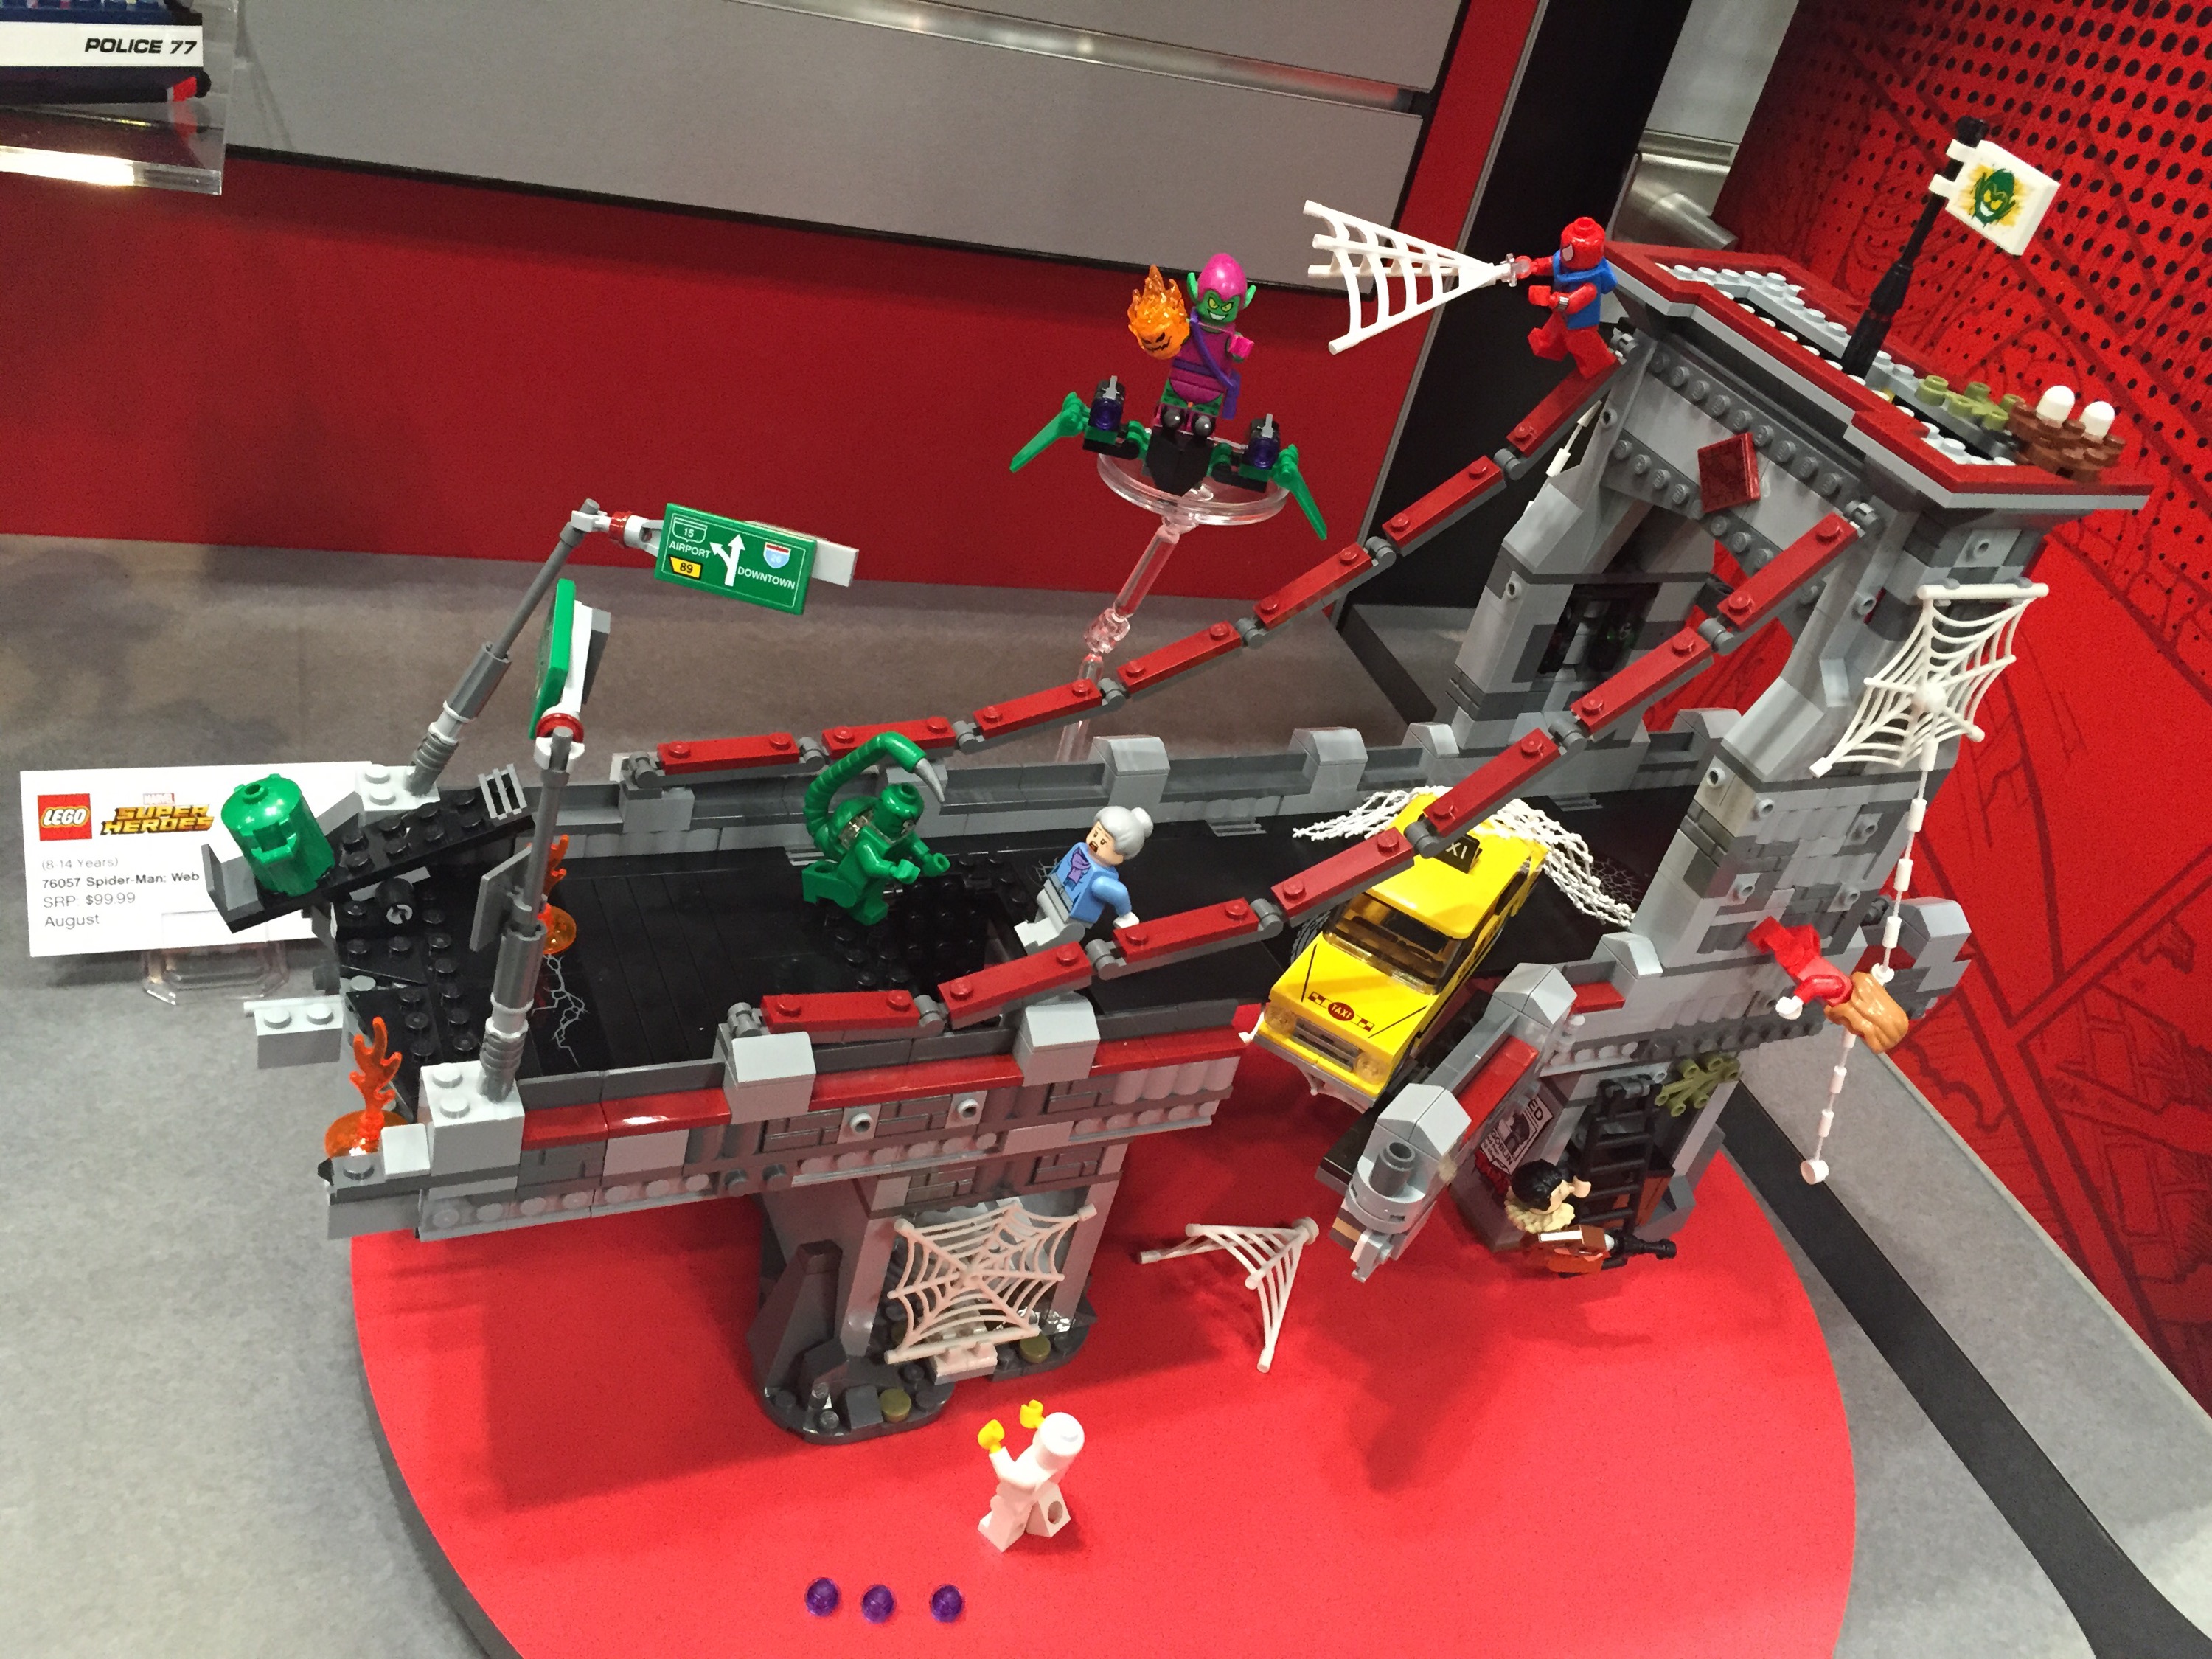 Toy 2016: LEGO Marvel Bridge Battle Set! - News